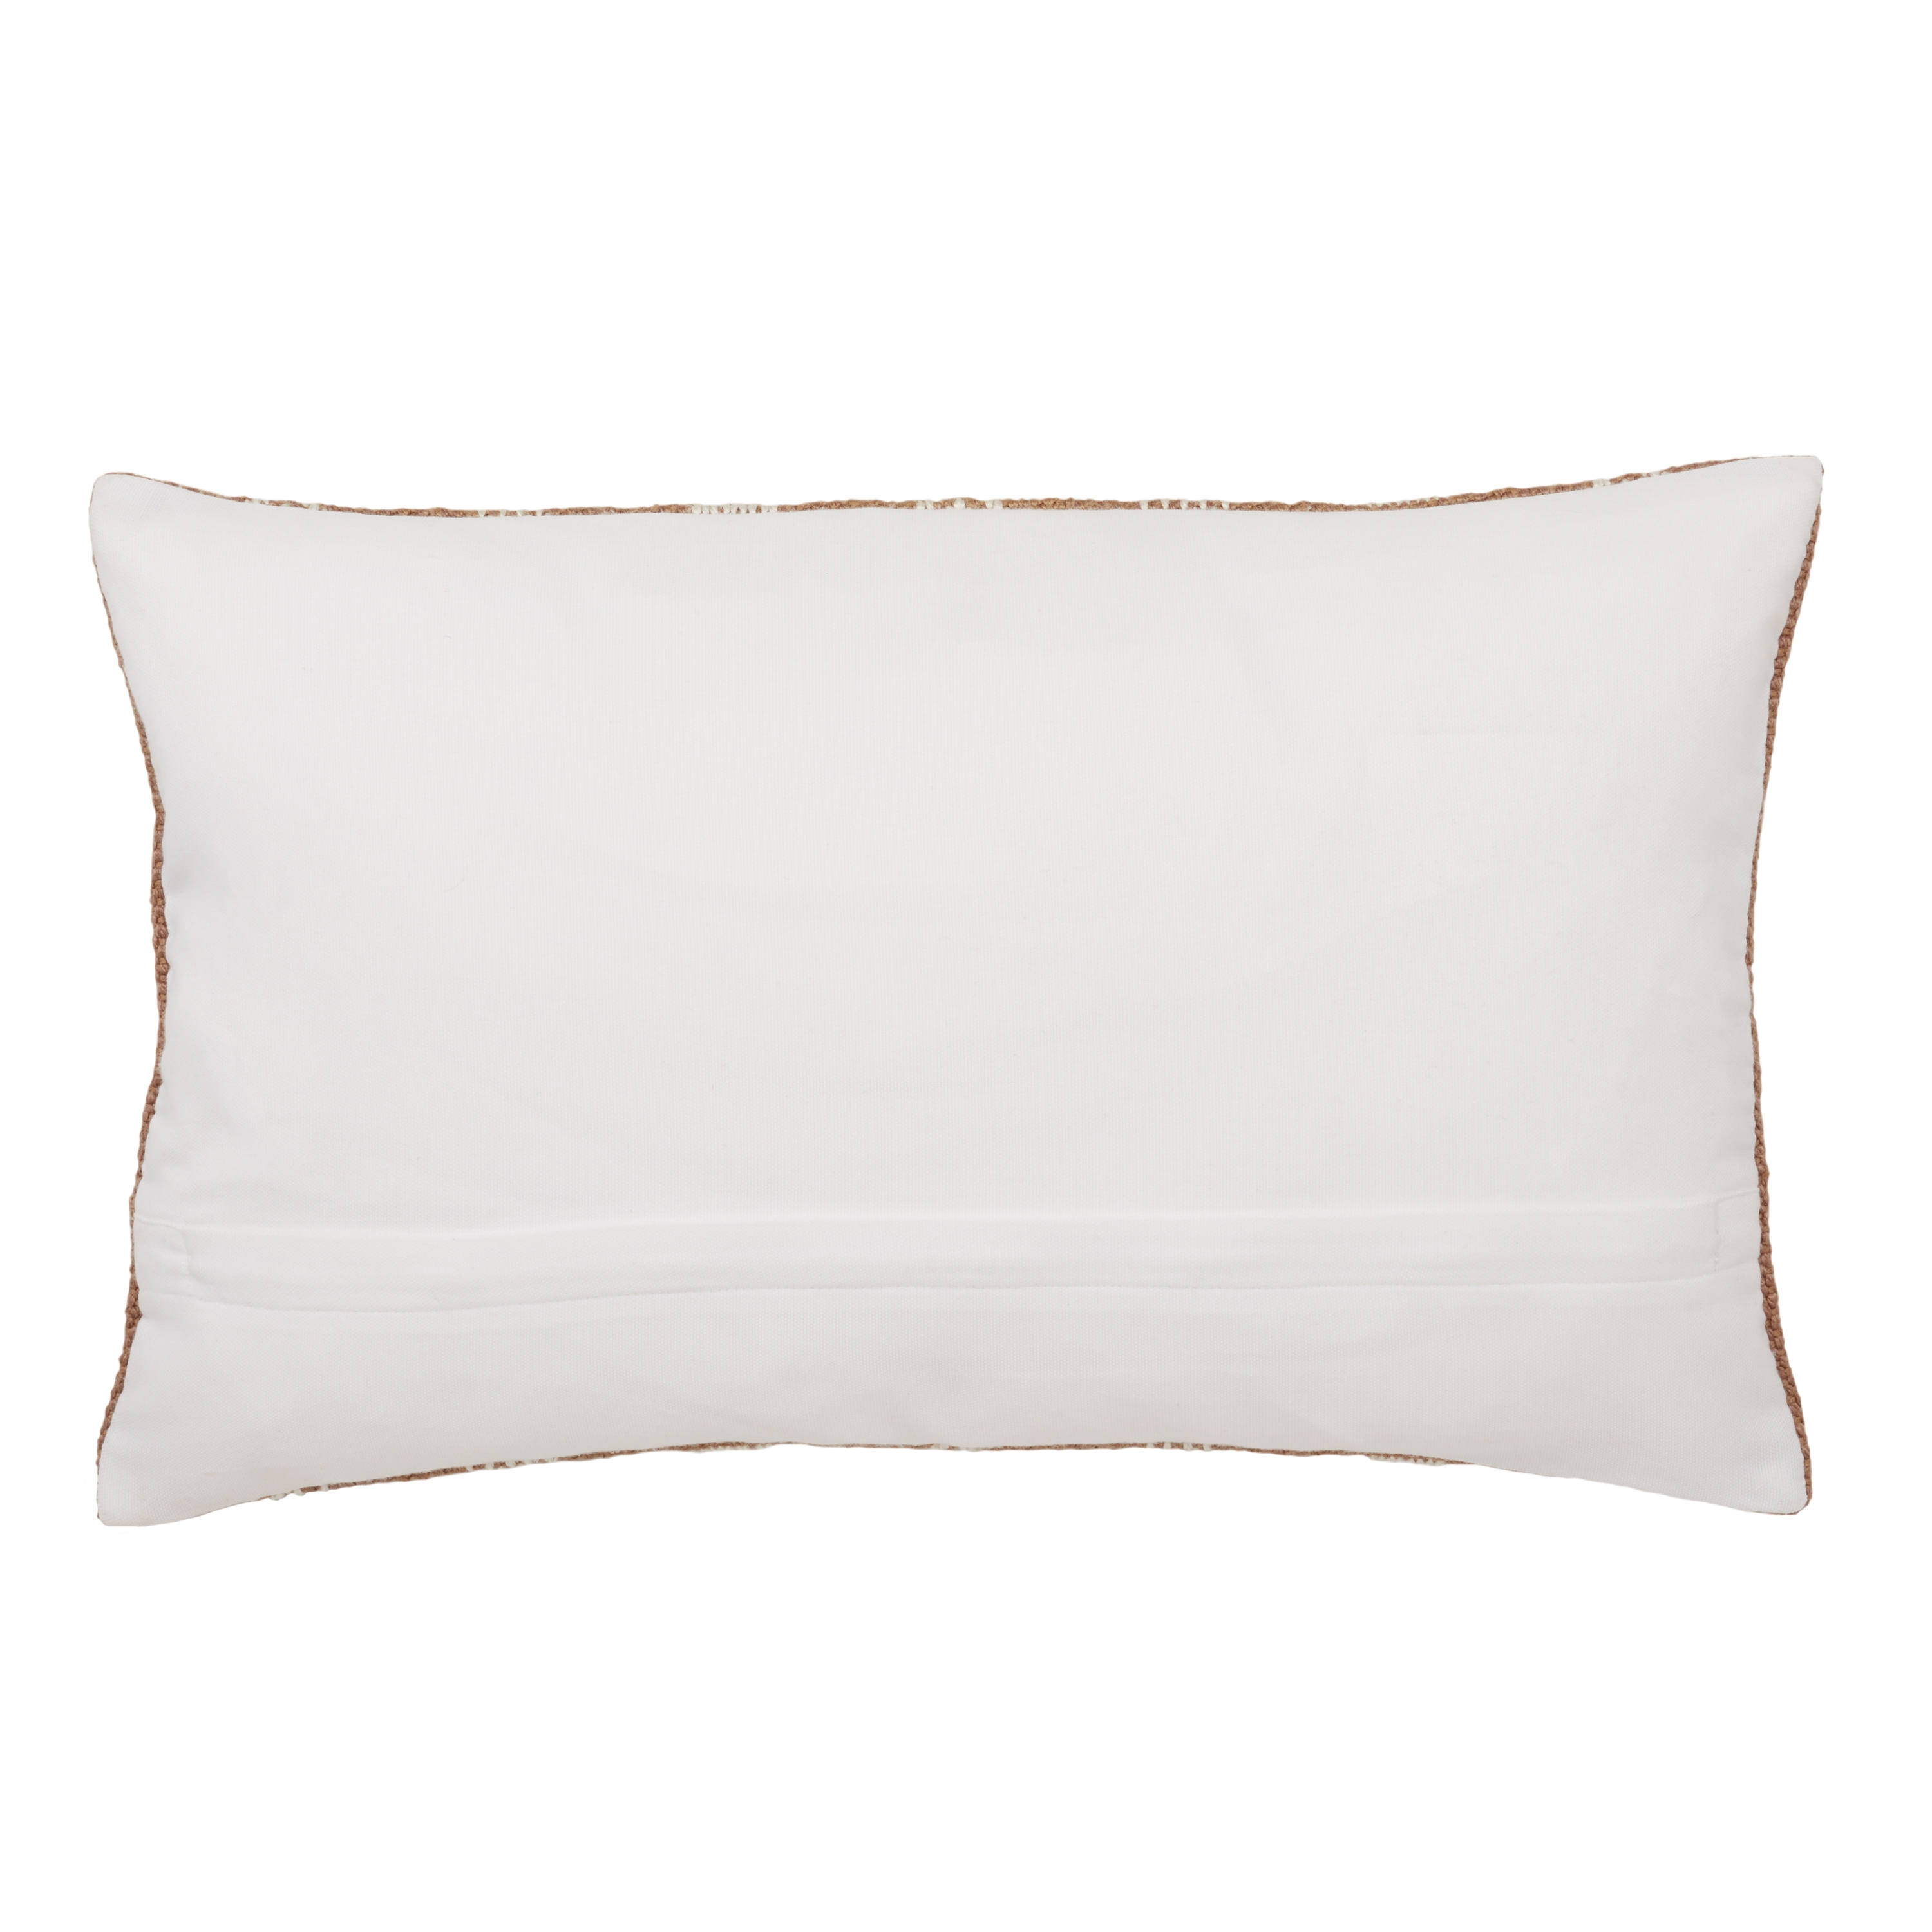 Papyrus Lumbar Pillow, Brown, 21" x 13" - Image 1